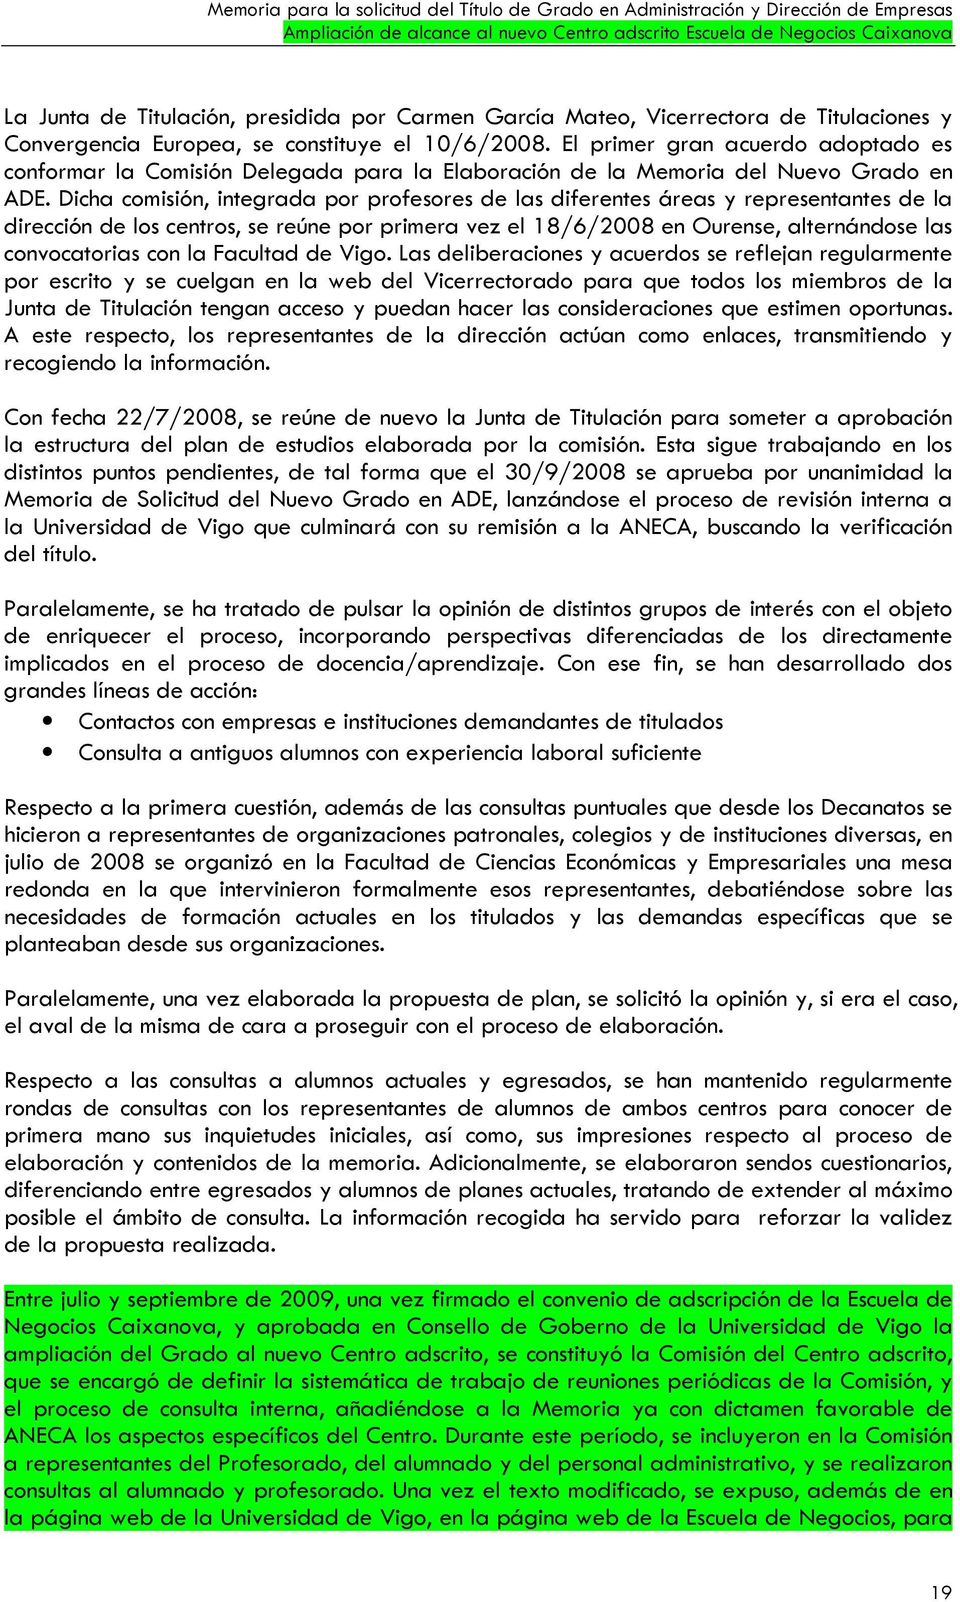 Dicha comisión, integrada por profesores de las diferentes áreas y representantes de la dirección de los centros, se reúne por primera vez el 18/6/2008 en Ourense, alternándose las convocatorias con